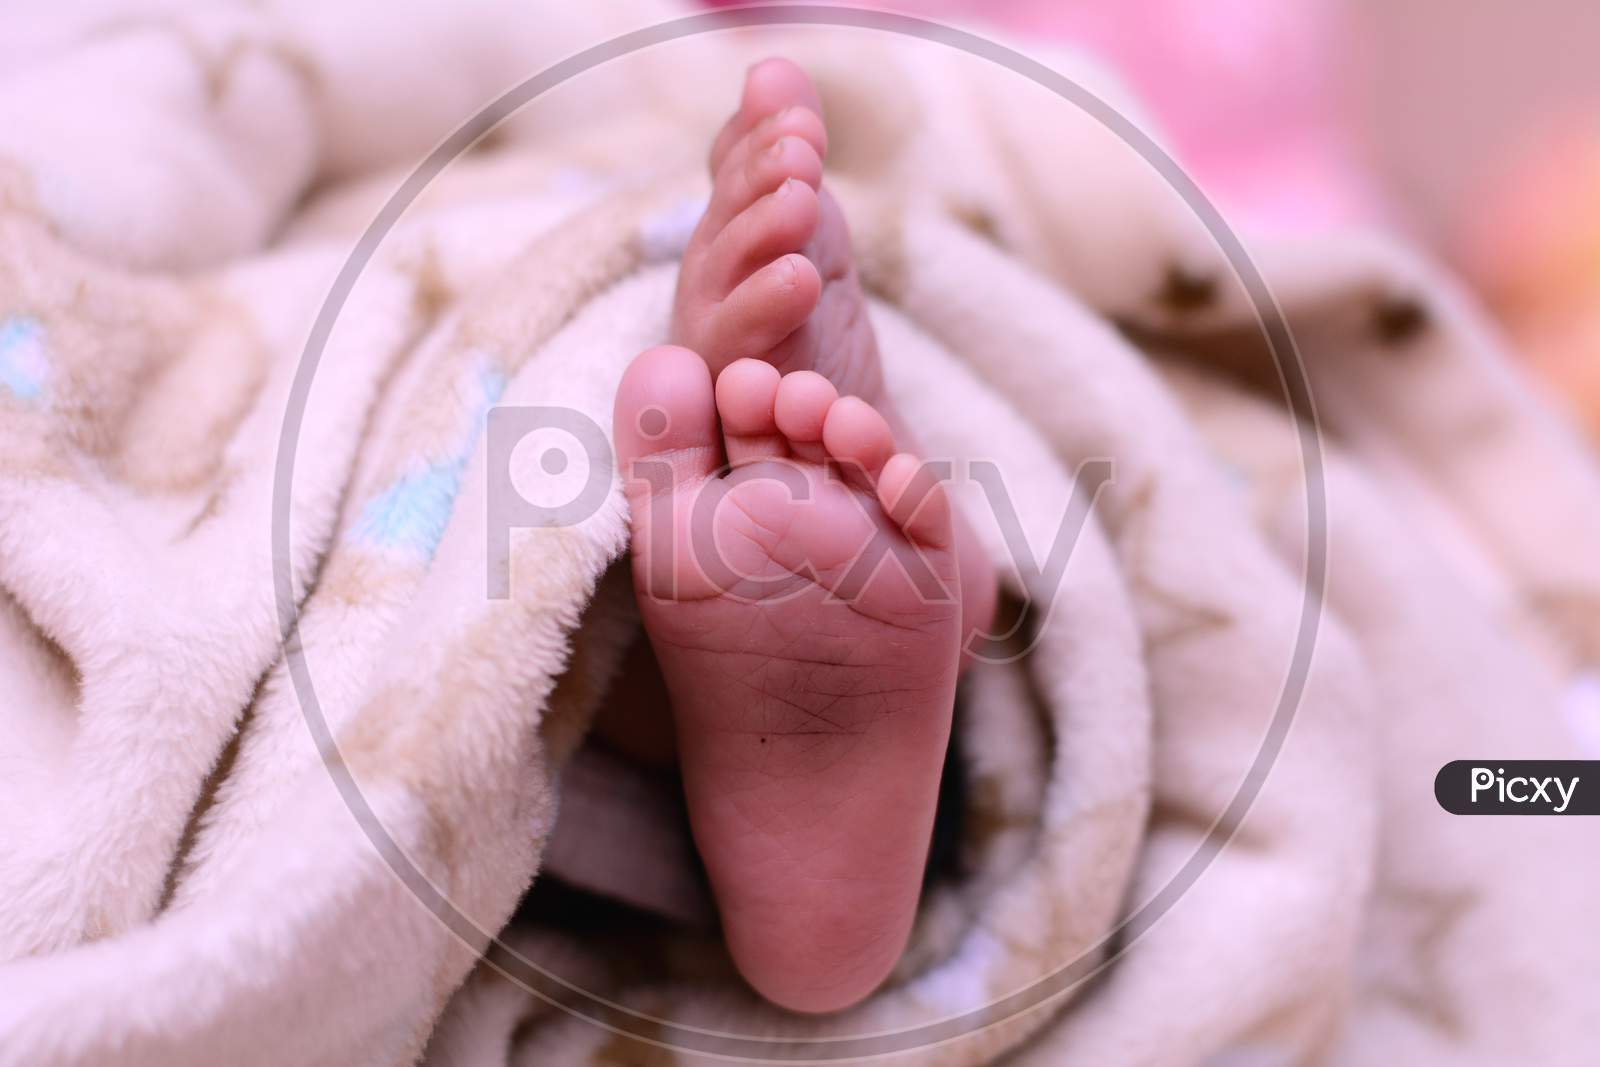 Tiny Feet Of A New Born